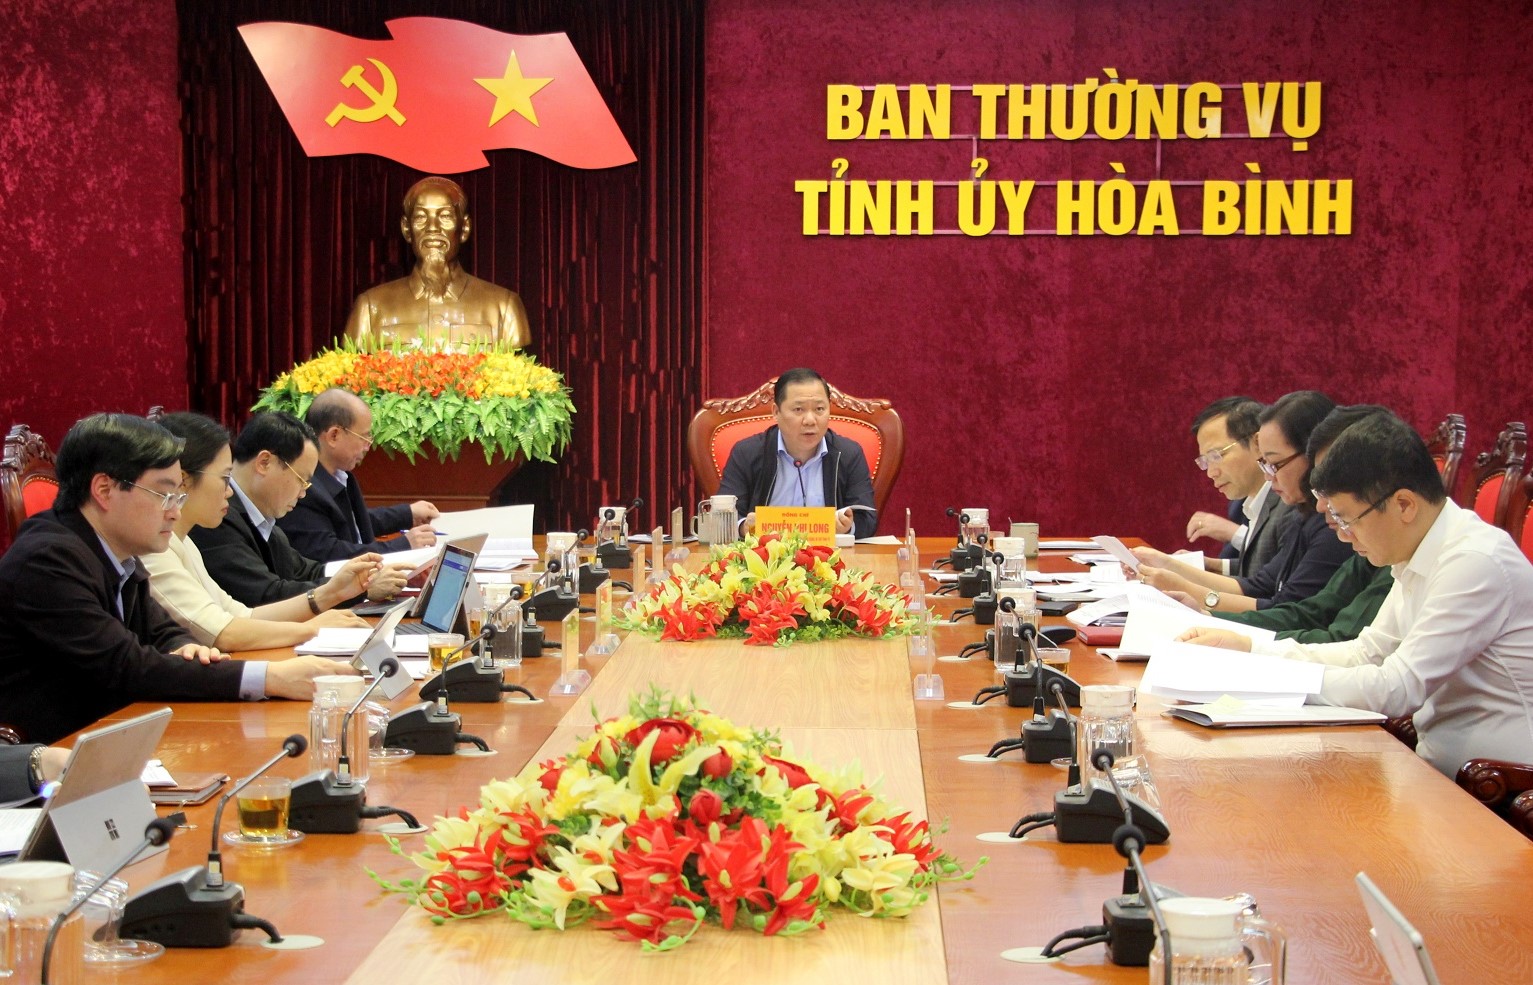 Bí thư Tỉnh ủy Hòa Bình Nguyễn Phi Long chủ trì hội nghị